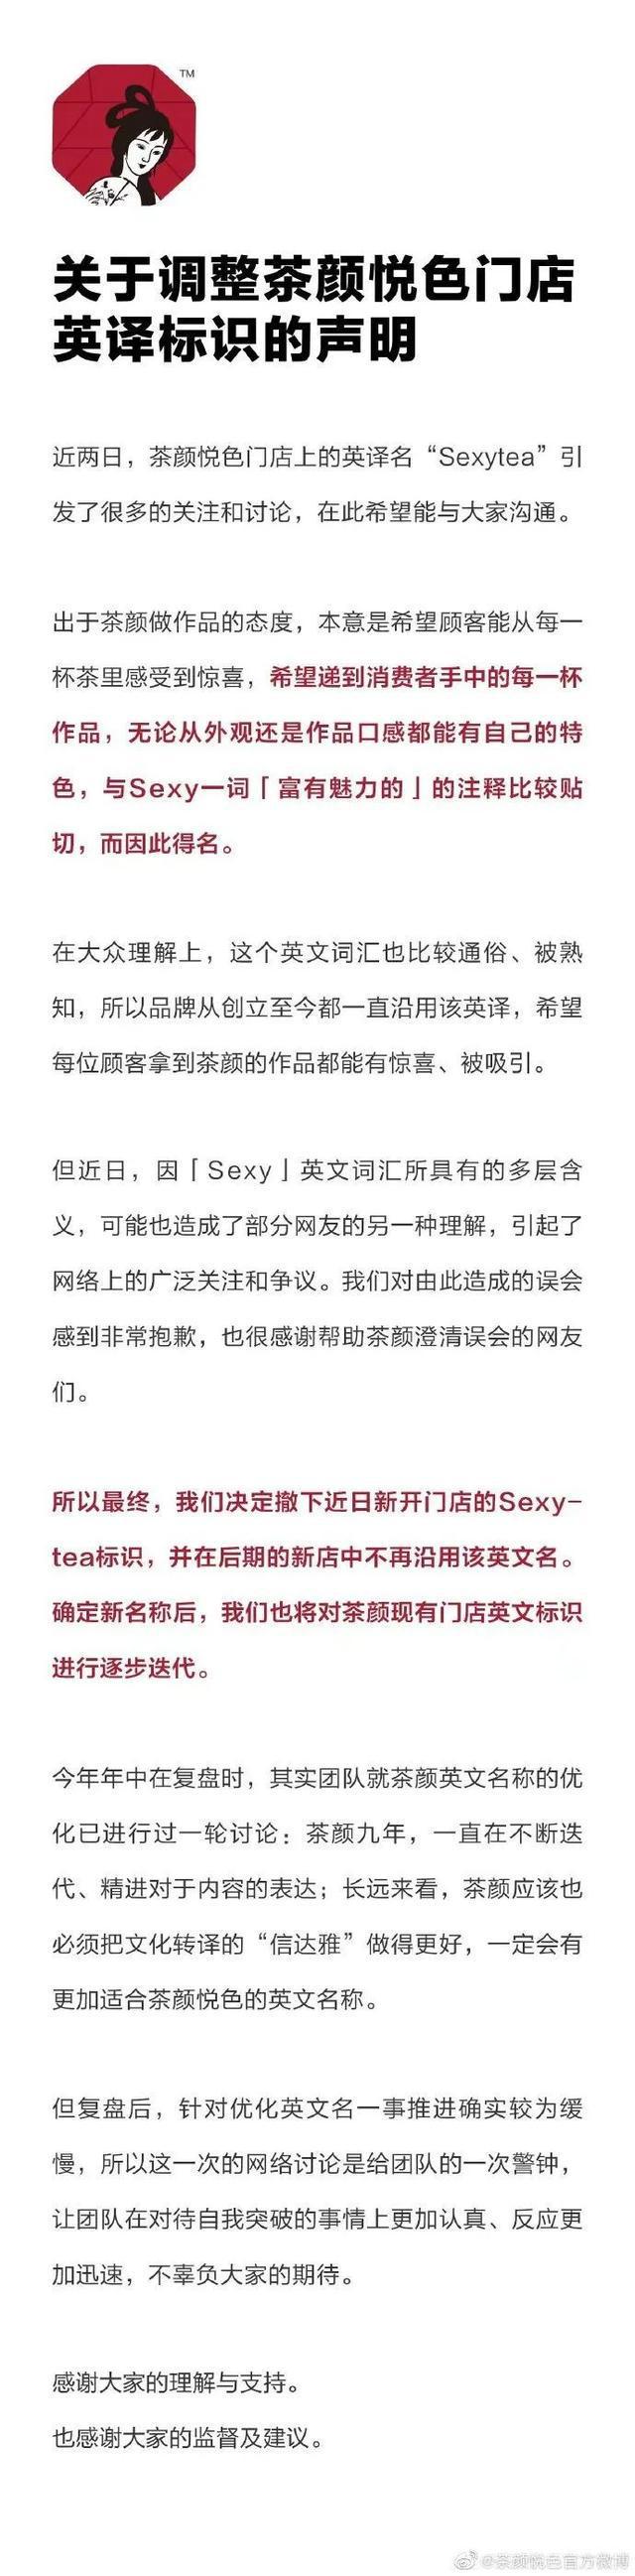 茶颜悦色英译名“Sexytea”，有些网友不淡定了，公司最新回应：我们马上改